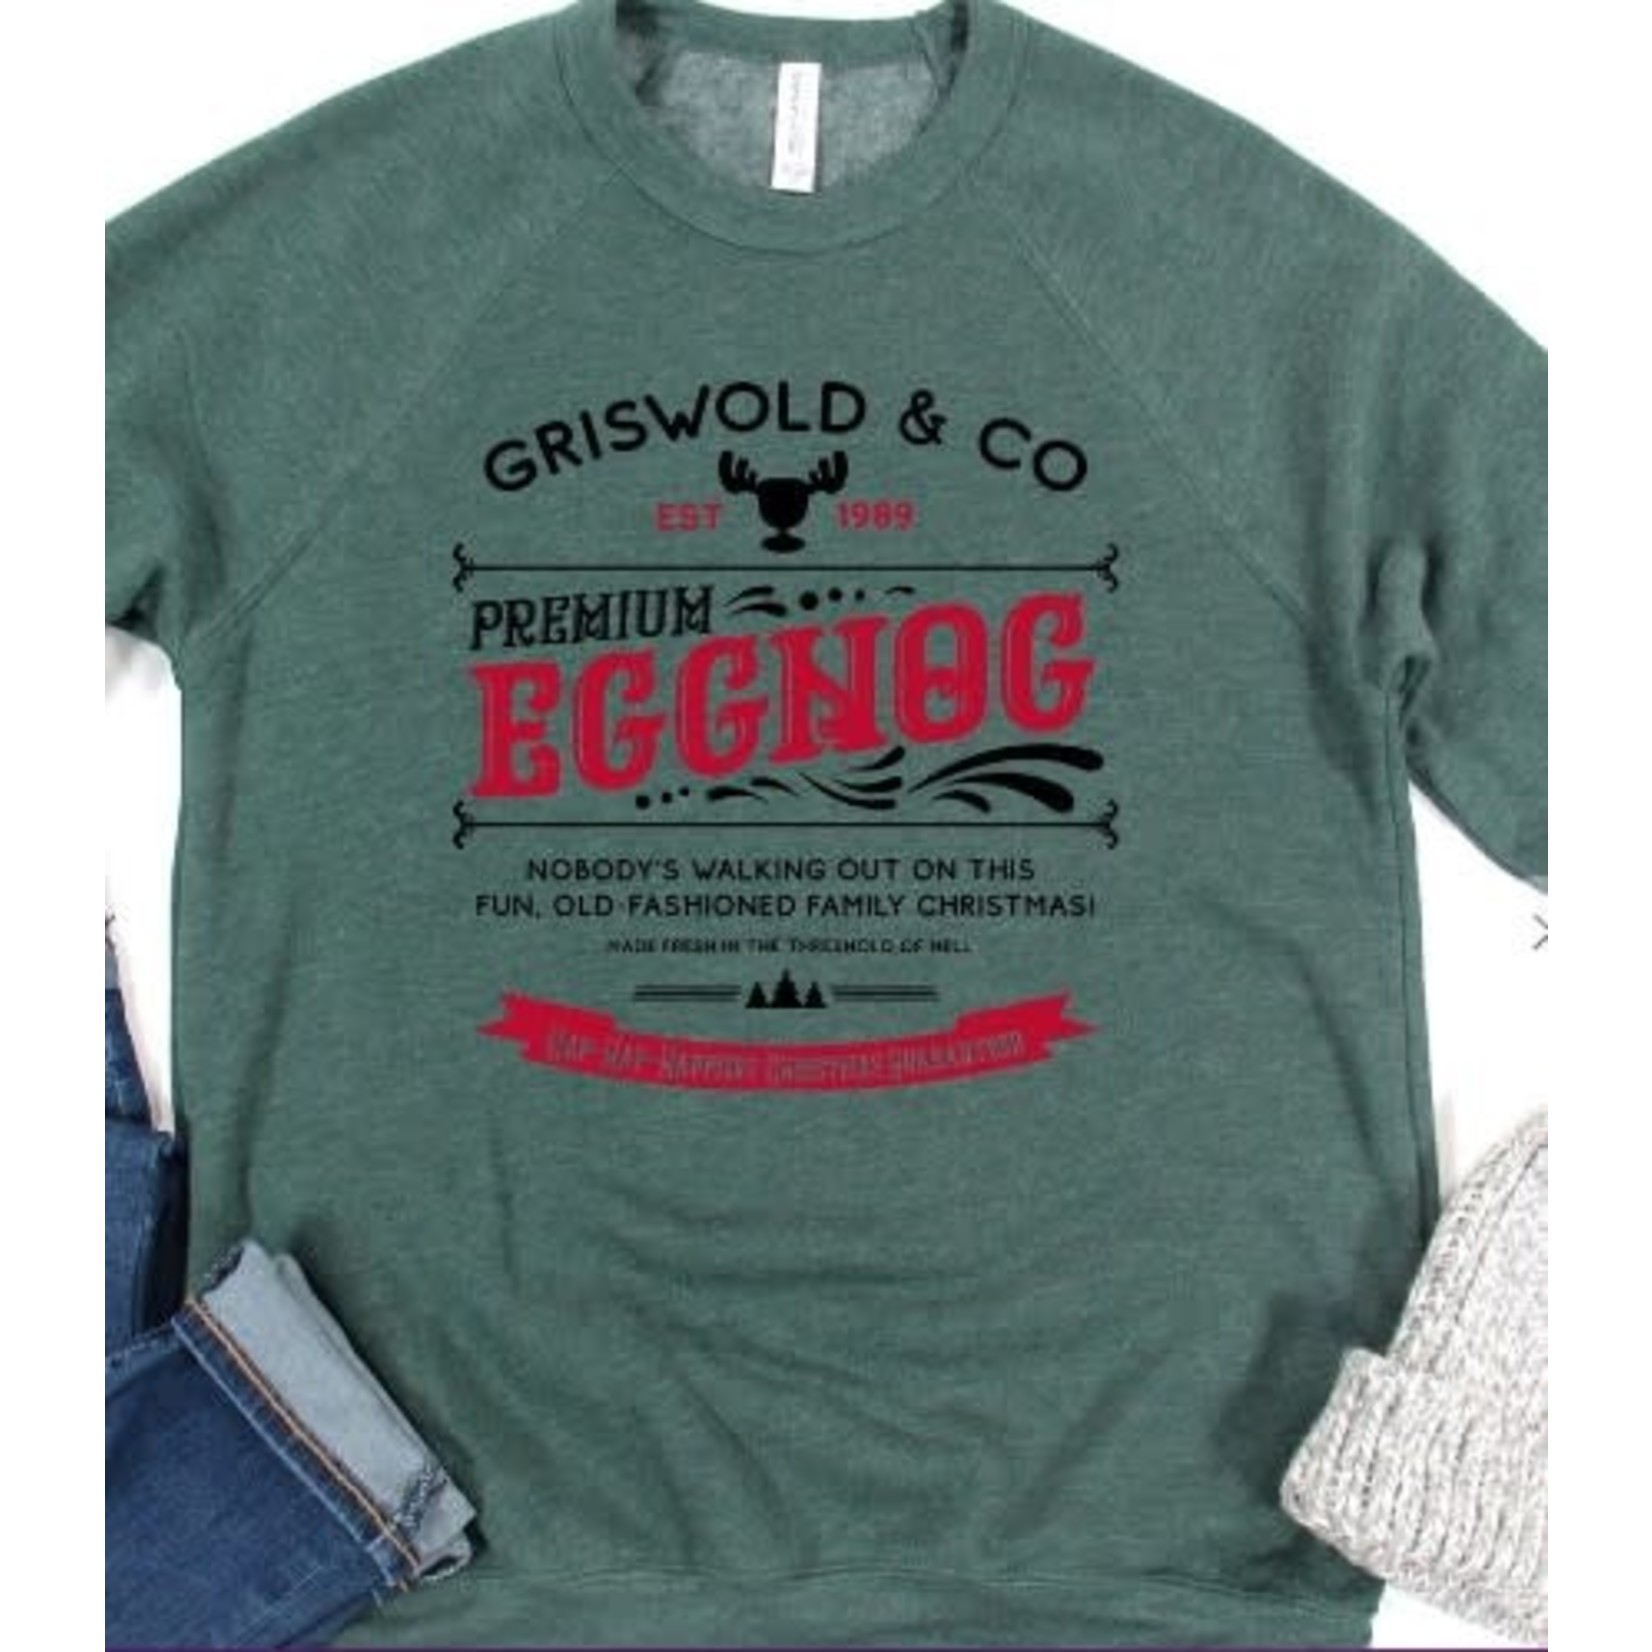 Kissed Apparel Kissed Apparel Griswold & Co Eggnog Crewneck Sweatshirt